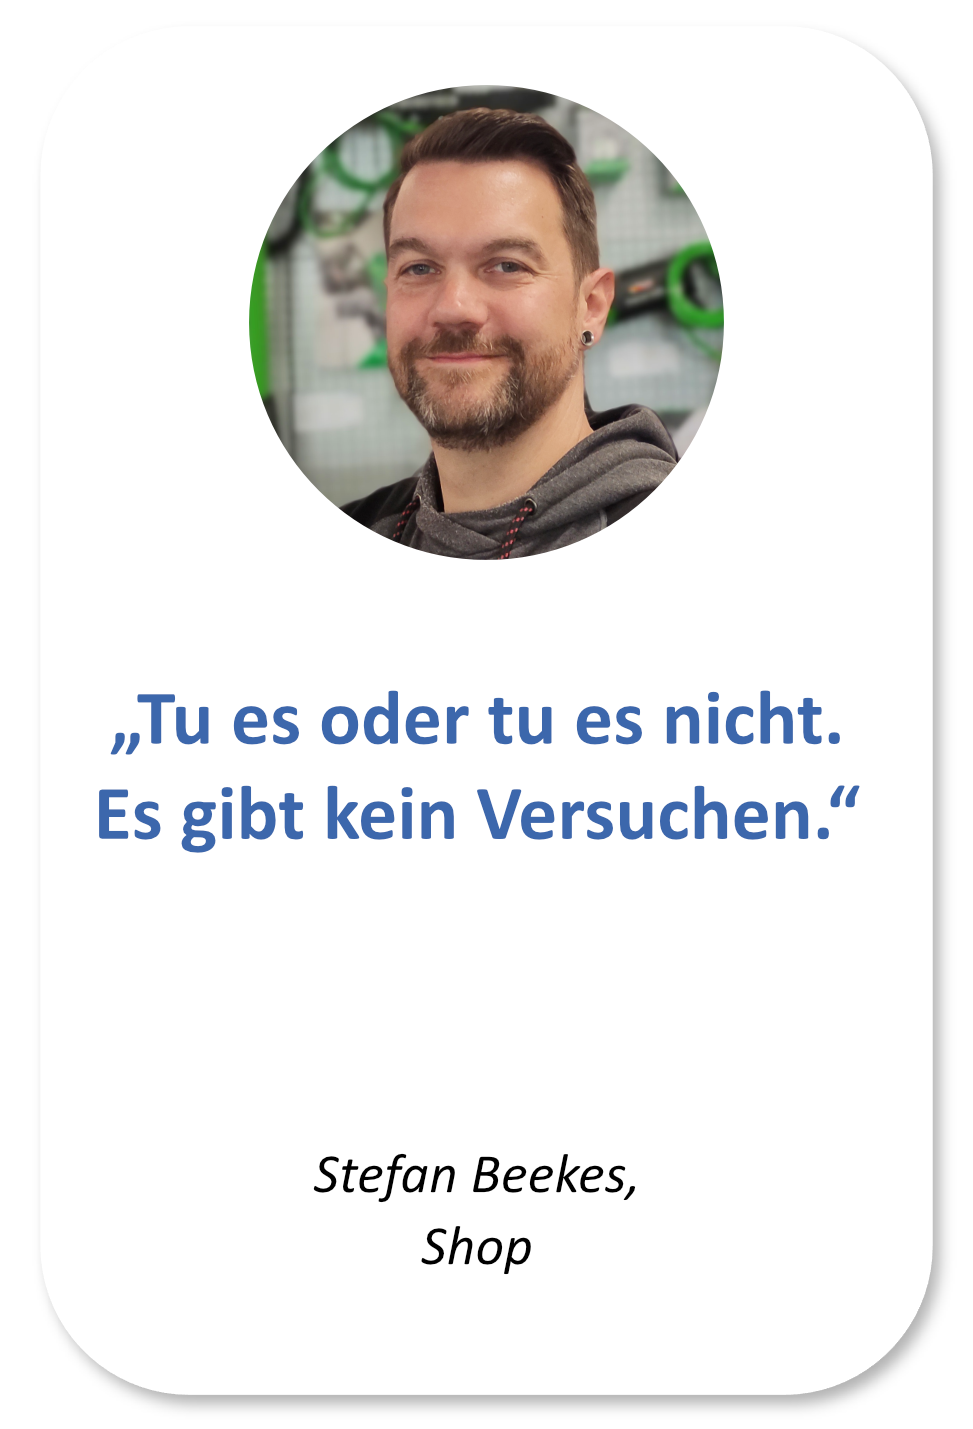 Stefan Beekes